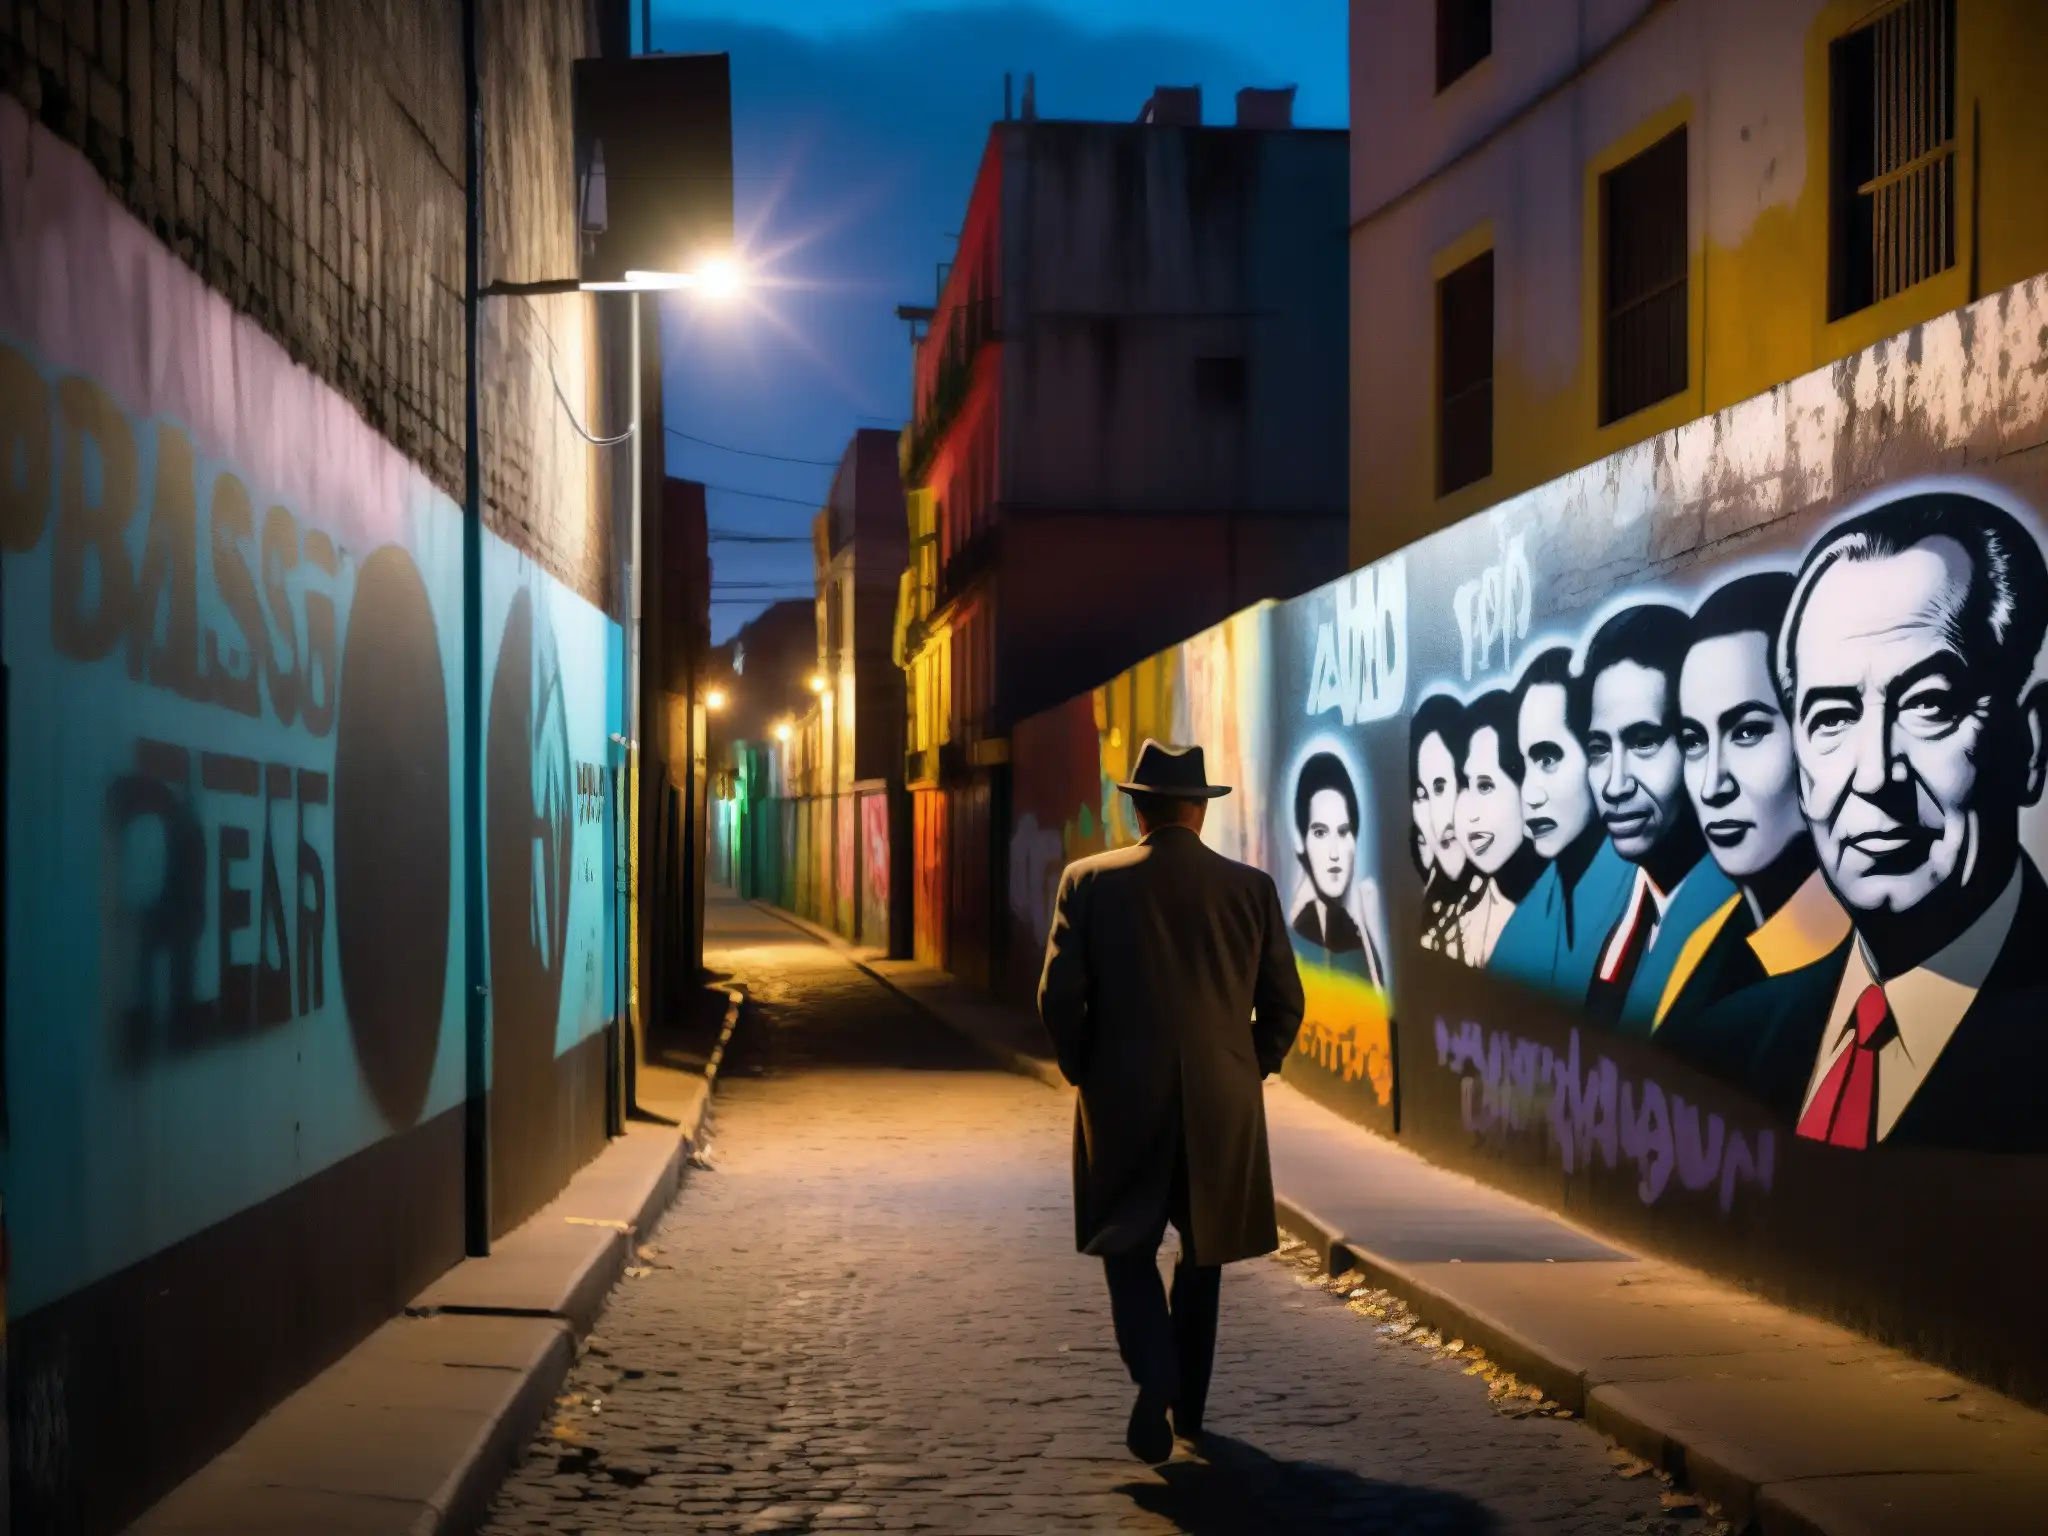 En un callejón oscuro de una ciudad latinoamericana, grafitis de presidentes dan un aire de misterio a las leyendas urbanas presidentes América Latina